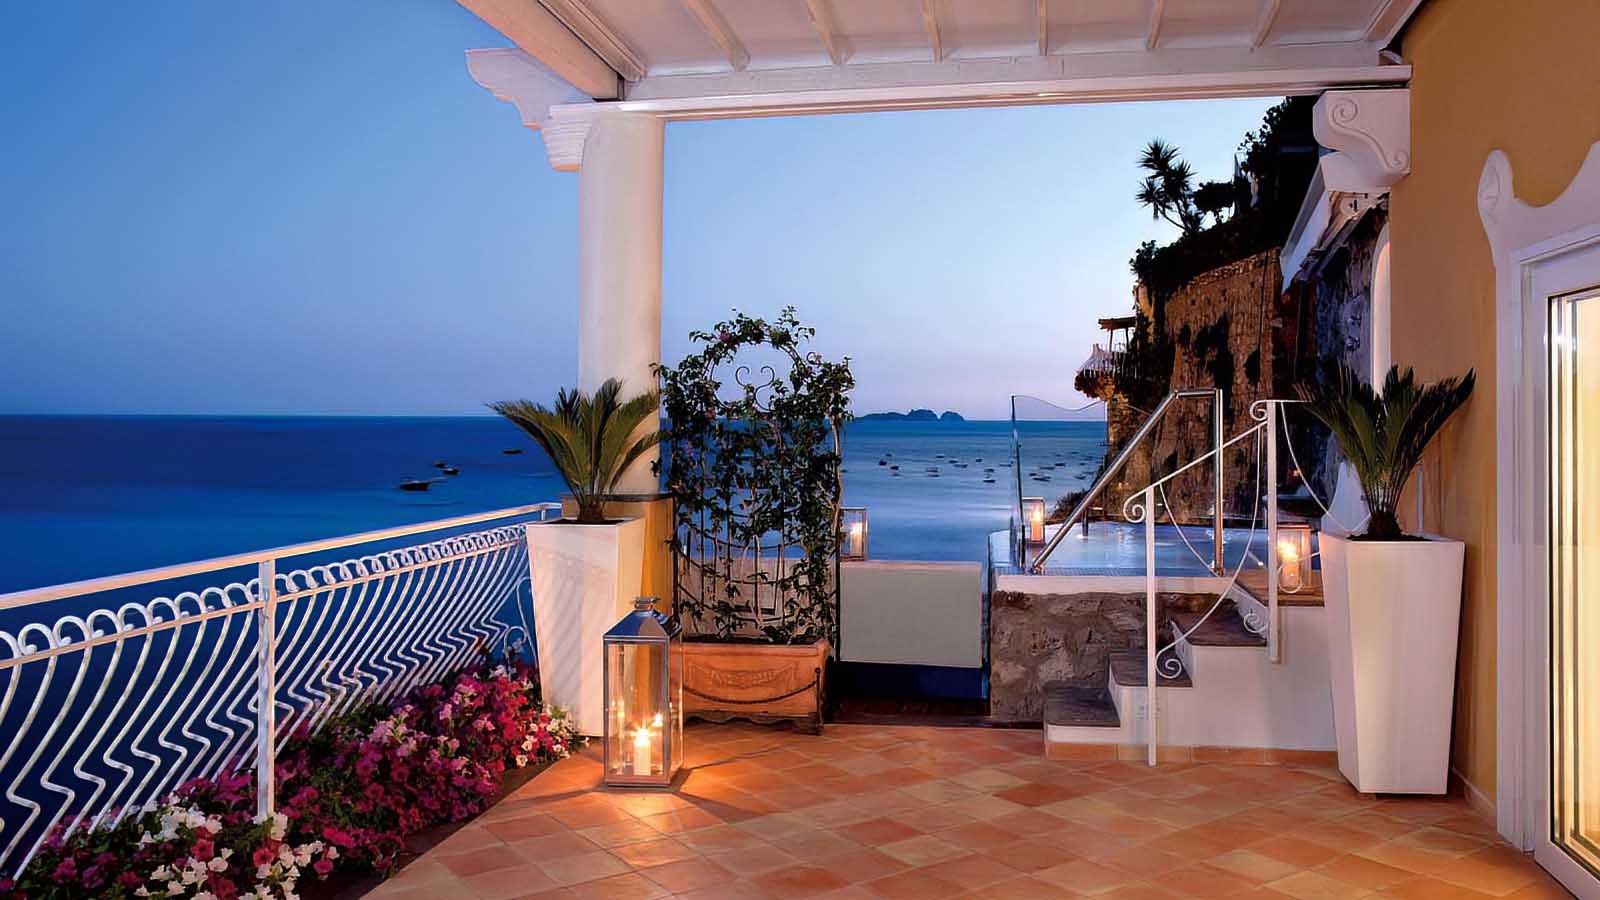 Places to stay in Positano Hotel Covo dei Saraceni 